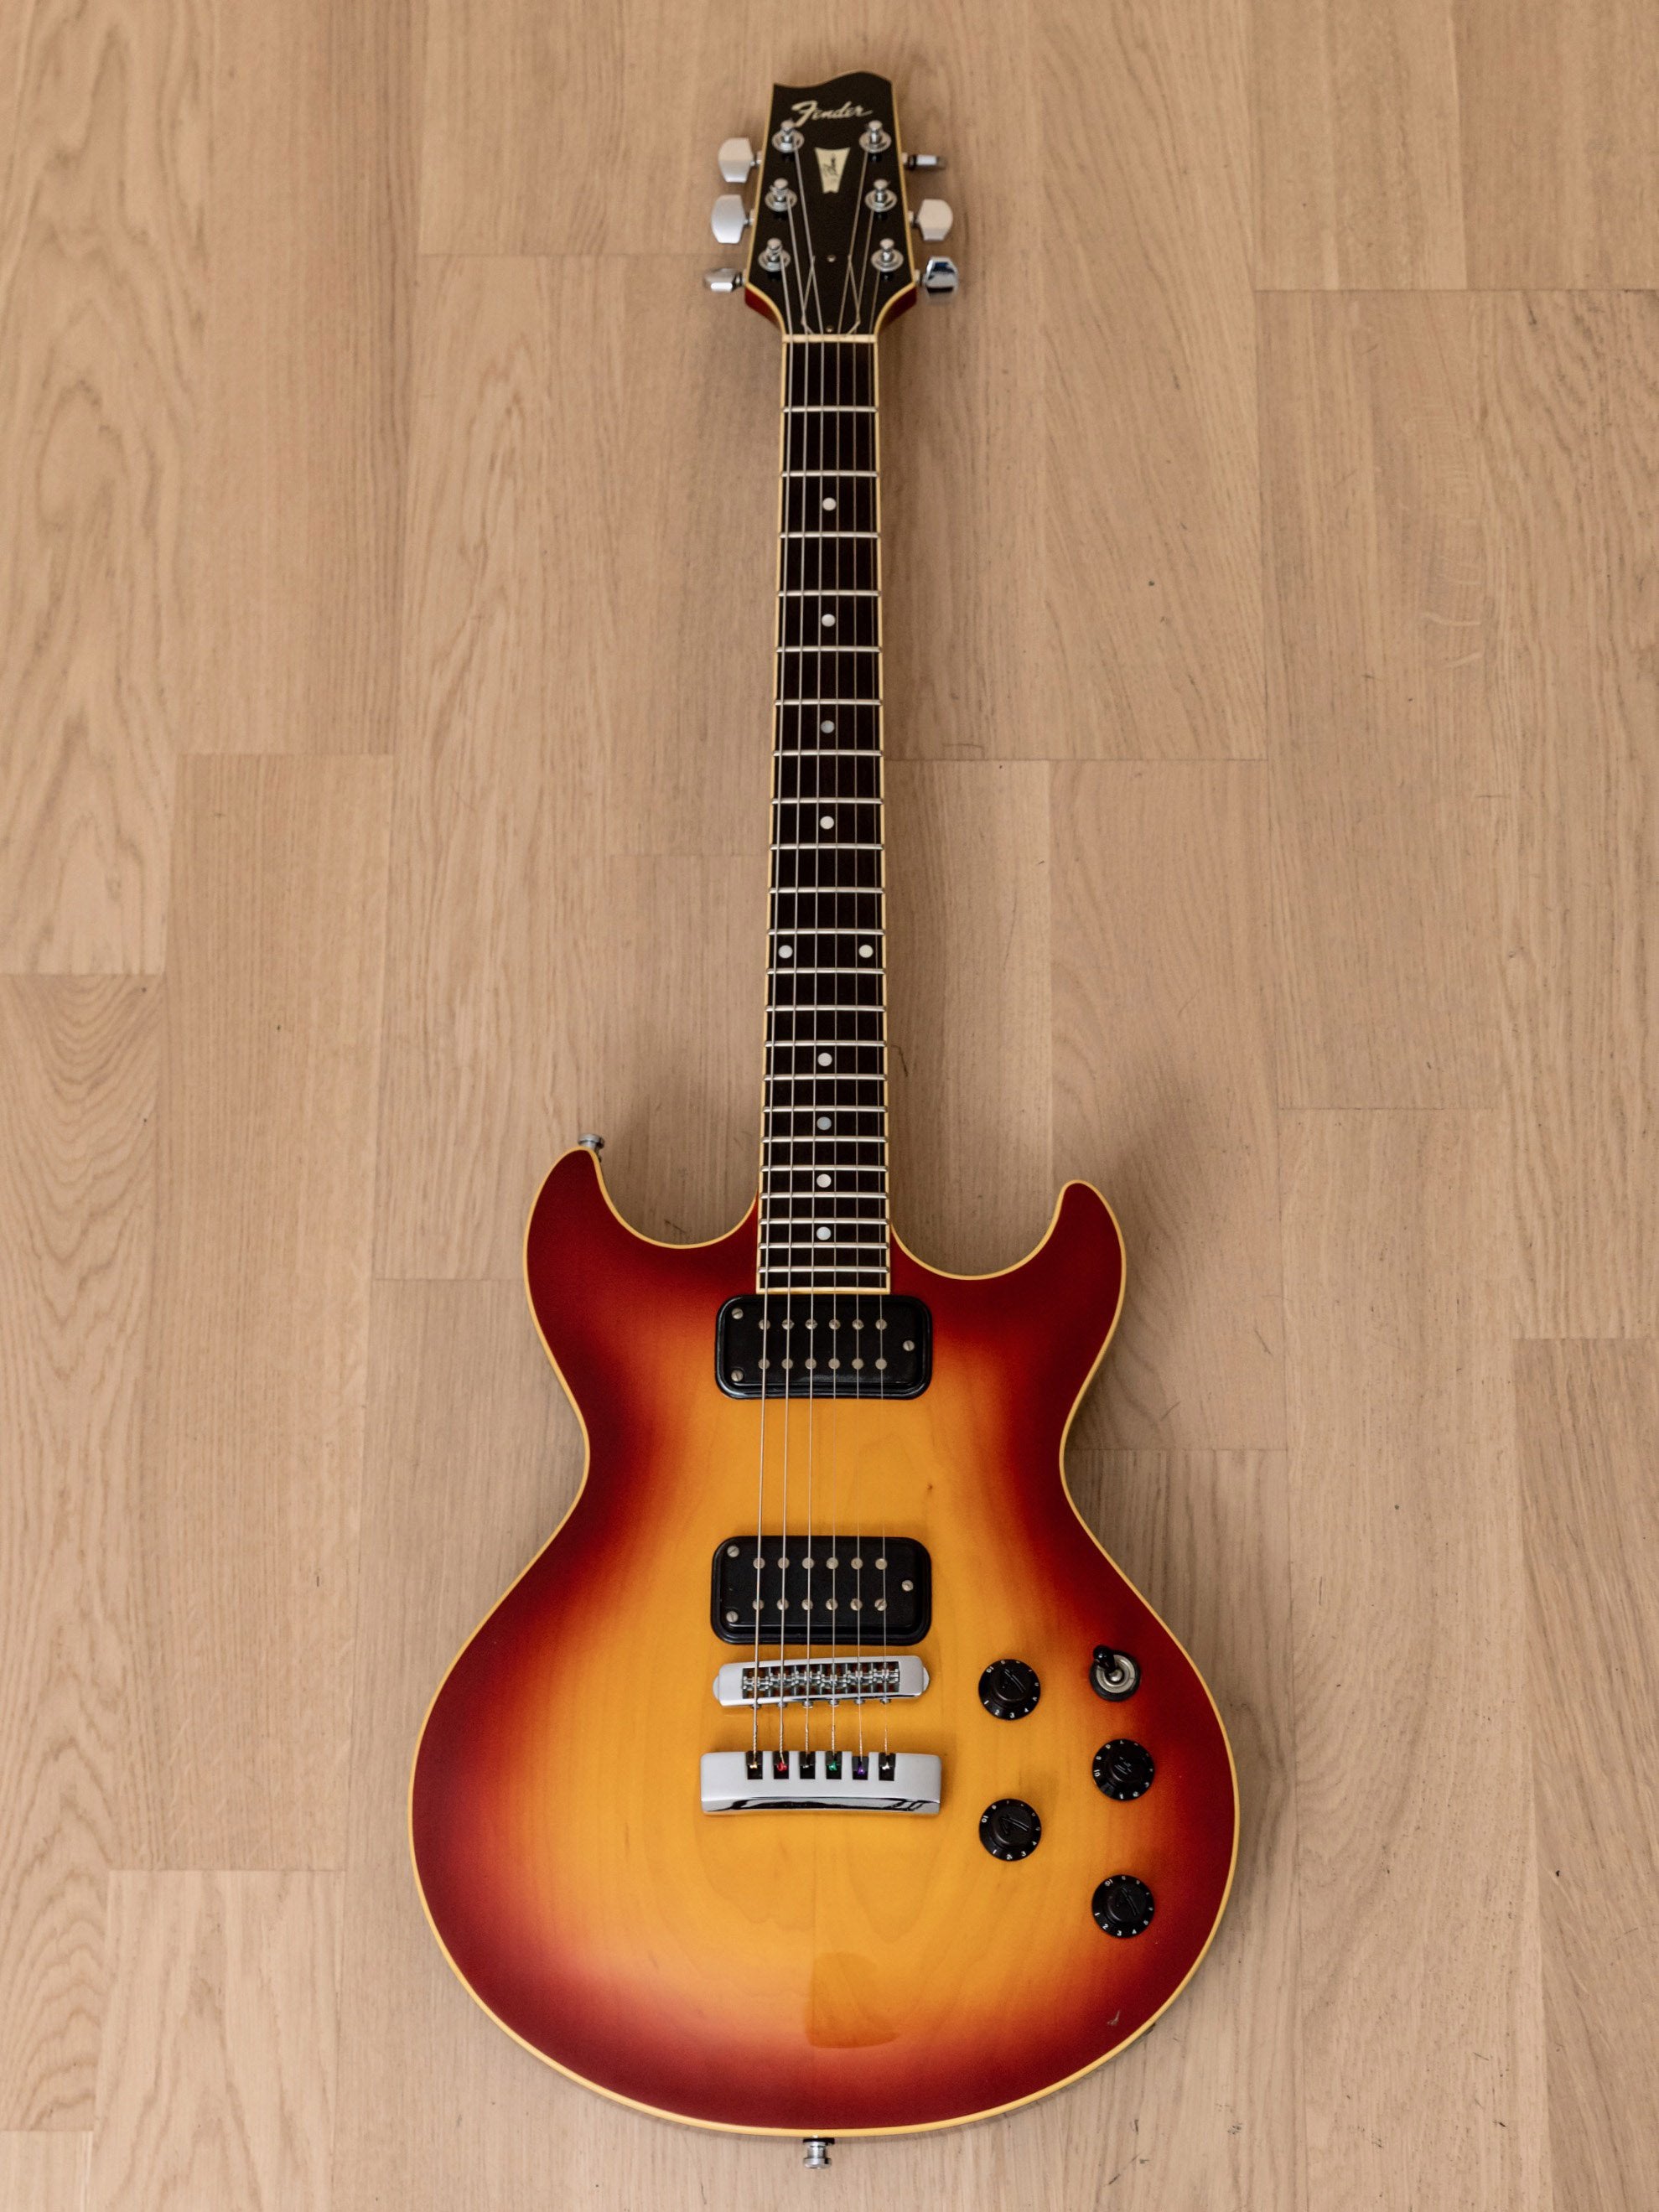 1984 Fender Master Series Flame Standard Vintage Set-Neck Guitar, Dan Smith-designed, Japan MIJ